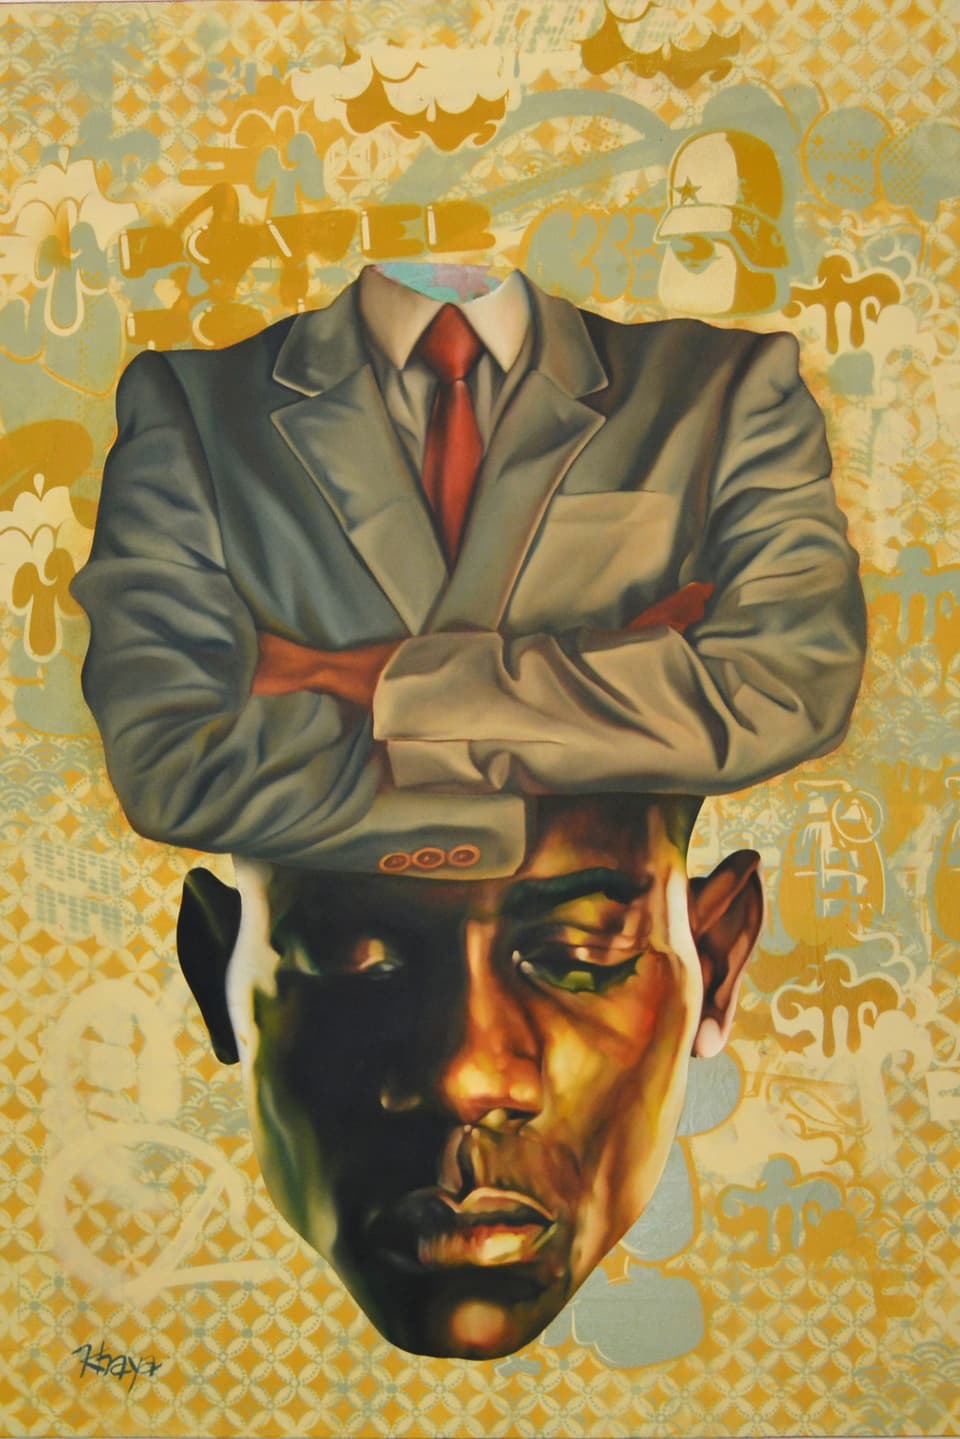 Auf einem gemalten Bild ist ein kopfloser Oberkörper in Anzug zu sehen, darunter schliesst sich nahtlos ein Kopf eines afrikanischen Mannes an, der die Augen geschlossen hat.